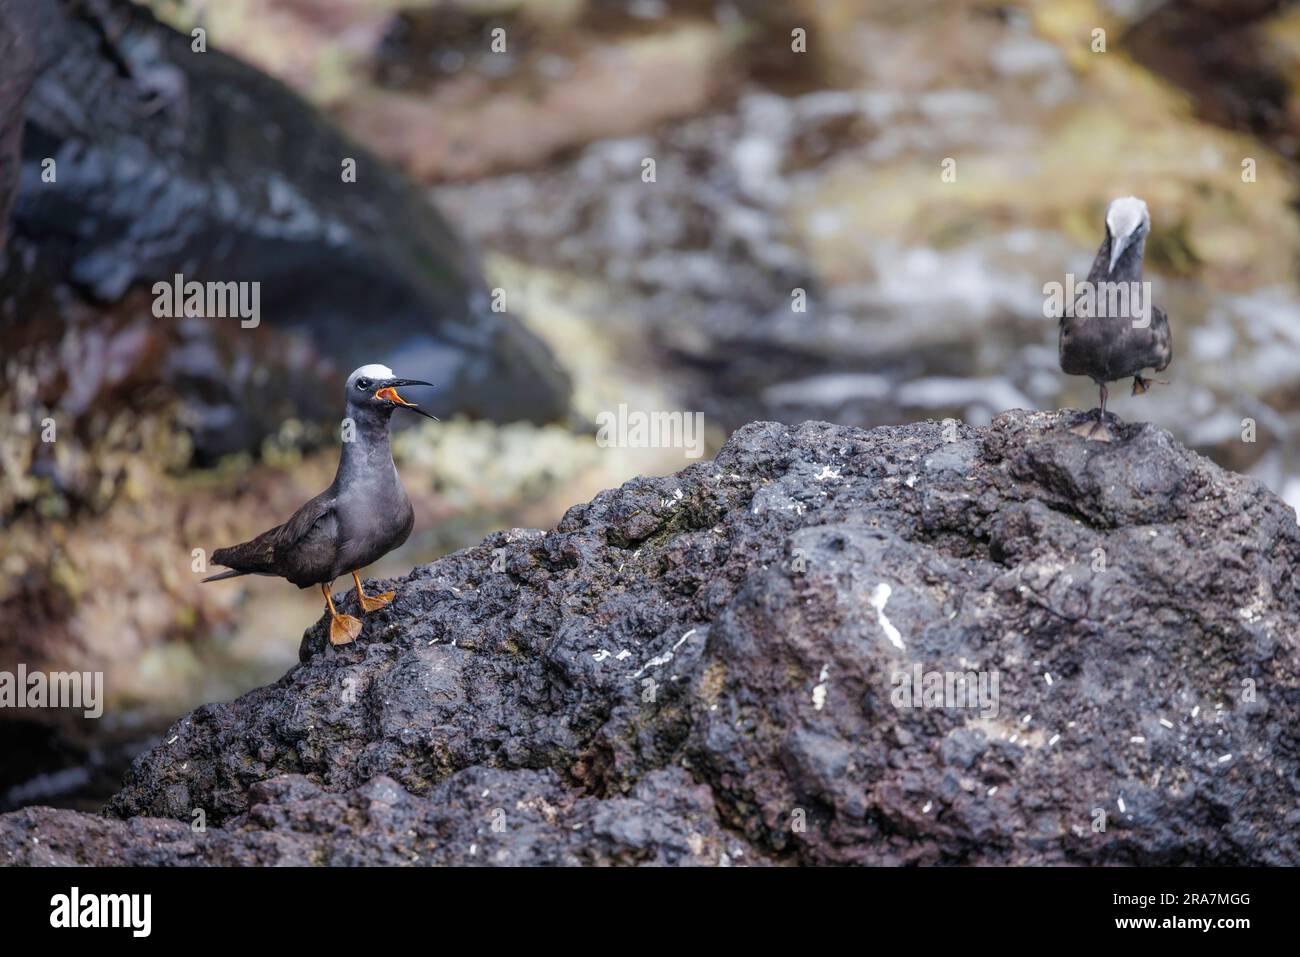 Lanterne nere noddy, Anous minutus, su una roccia nell'oceano Pacifico al largo dell'isola di Maui, Hawaii. Chiamati Noio in hawaiano, sono una sottospecifica endemica Foto Stock